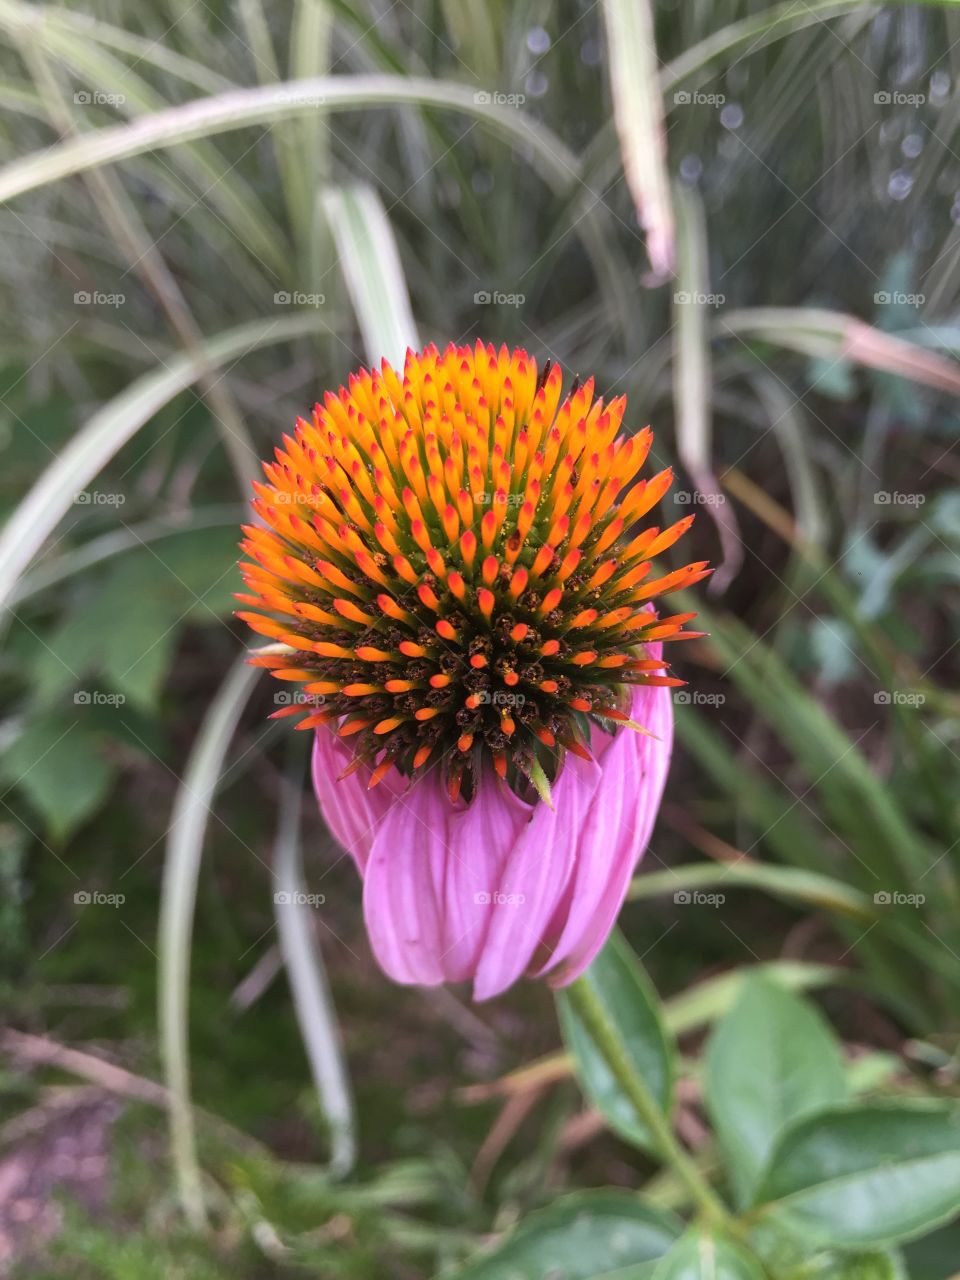 An interesting flower